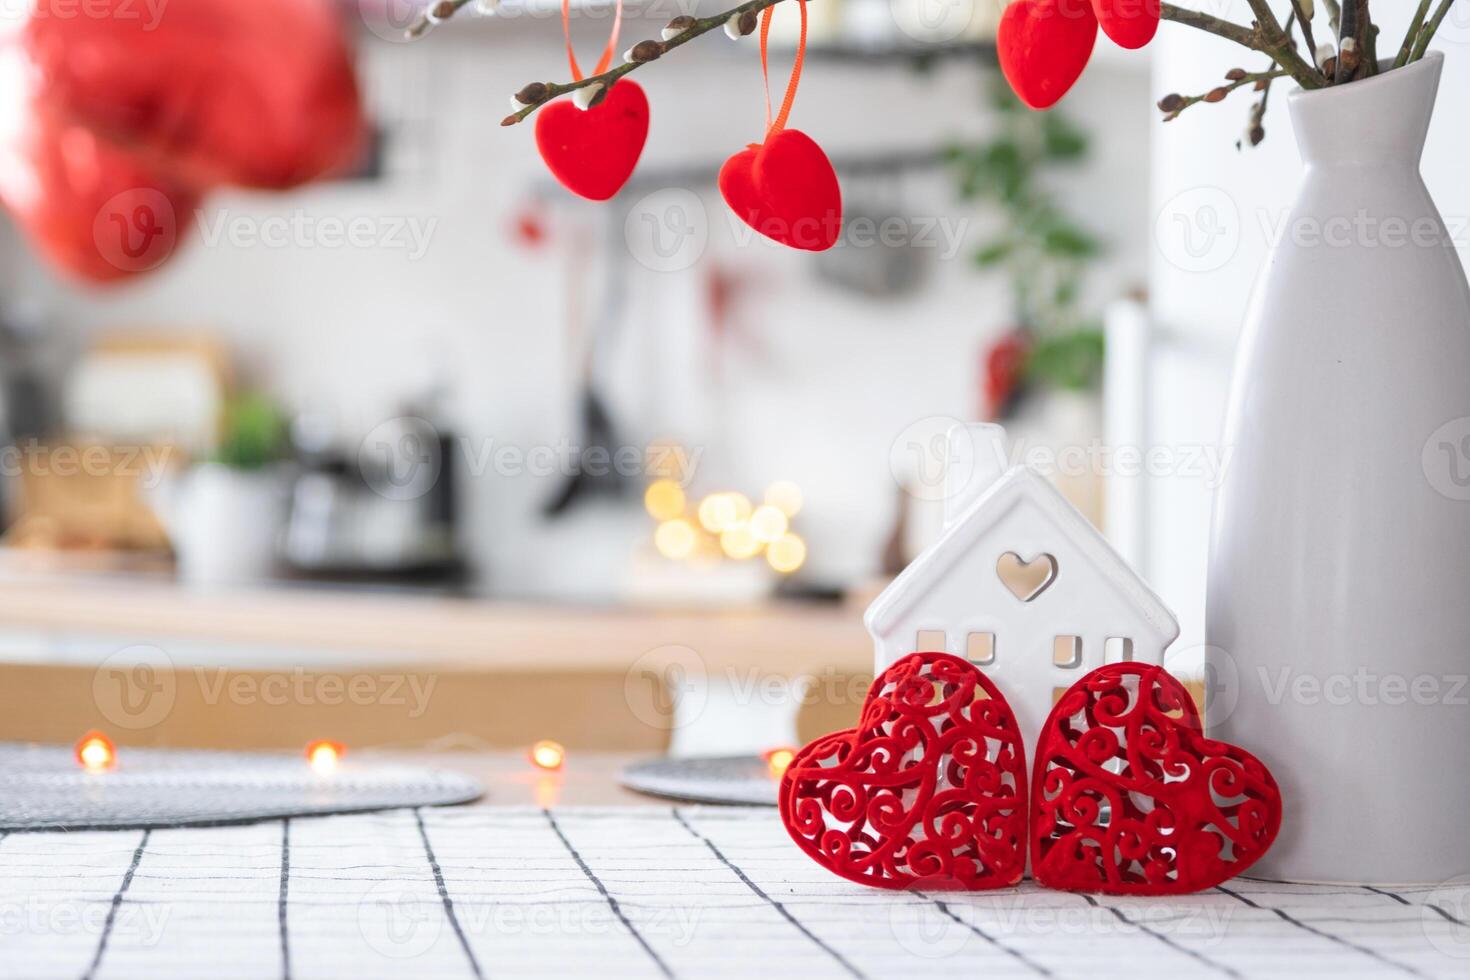 nyckel till mycket liten hus av mysigt Hem med valentine dekor på tabell av kök. gåva för valentines dag, familj kärlek bo. design, projekt, rör på sig till ny hus, inteckning, hyra och inköp verklig egendom foto